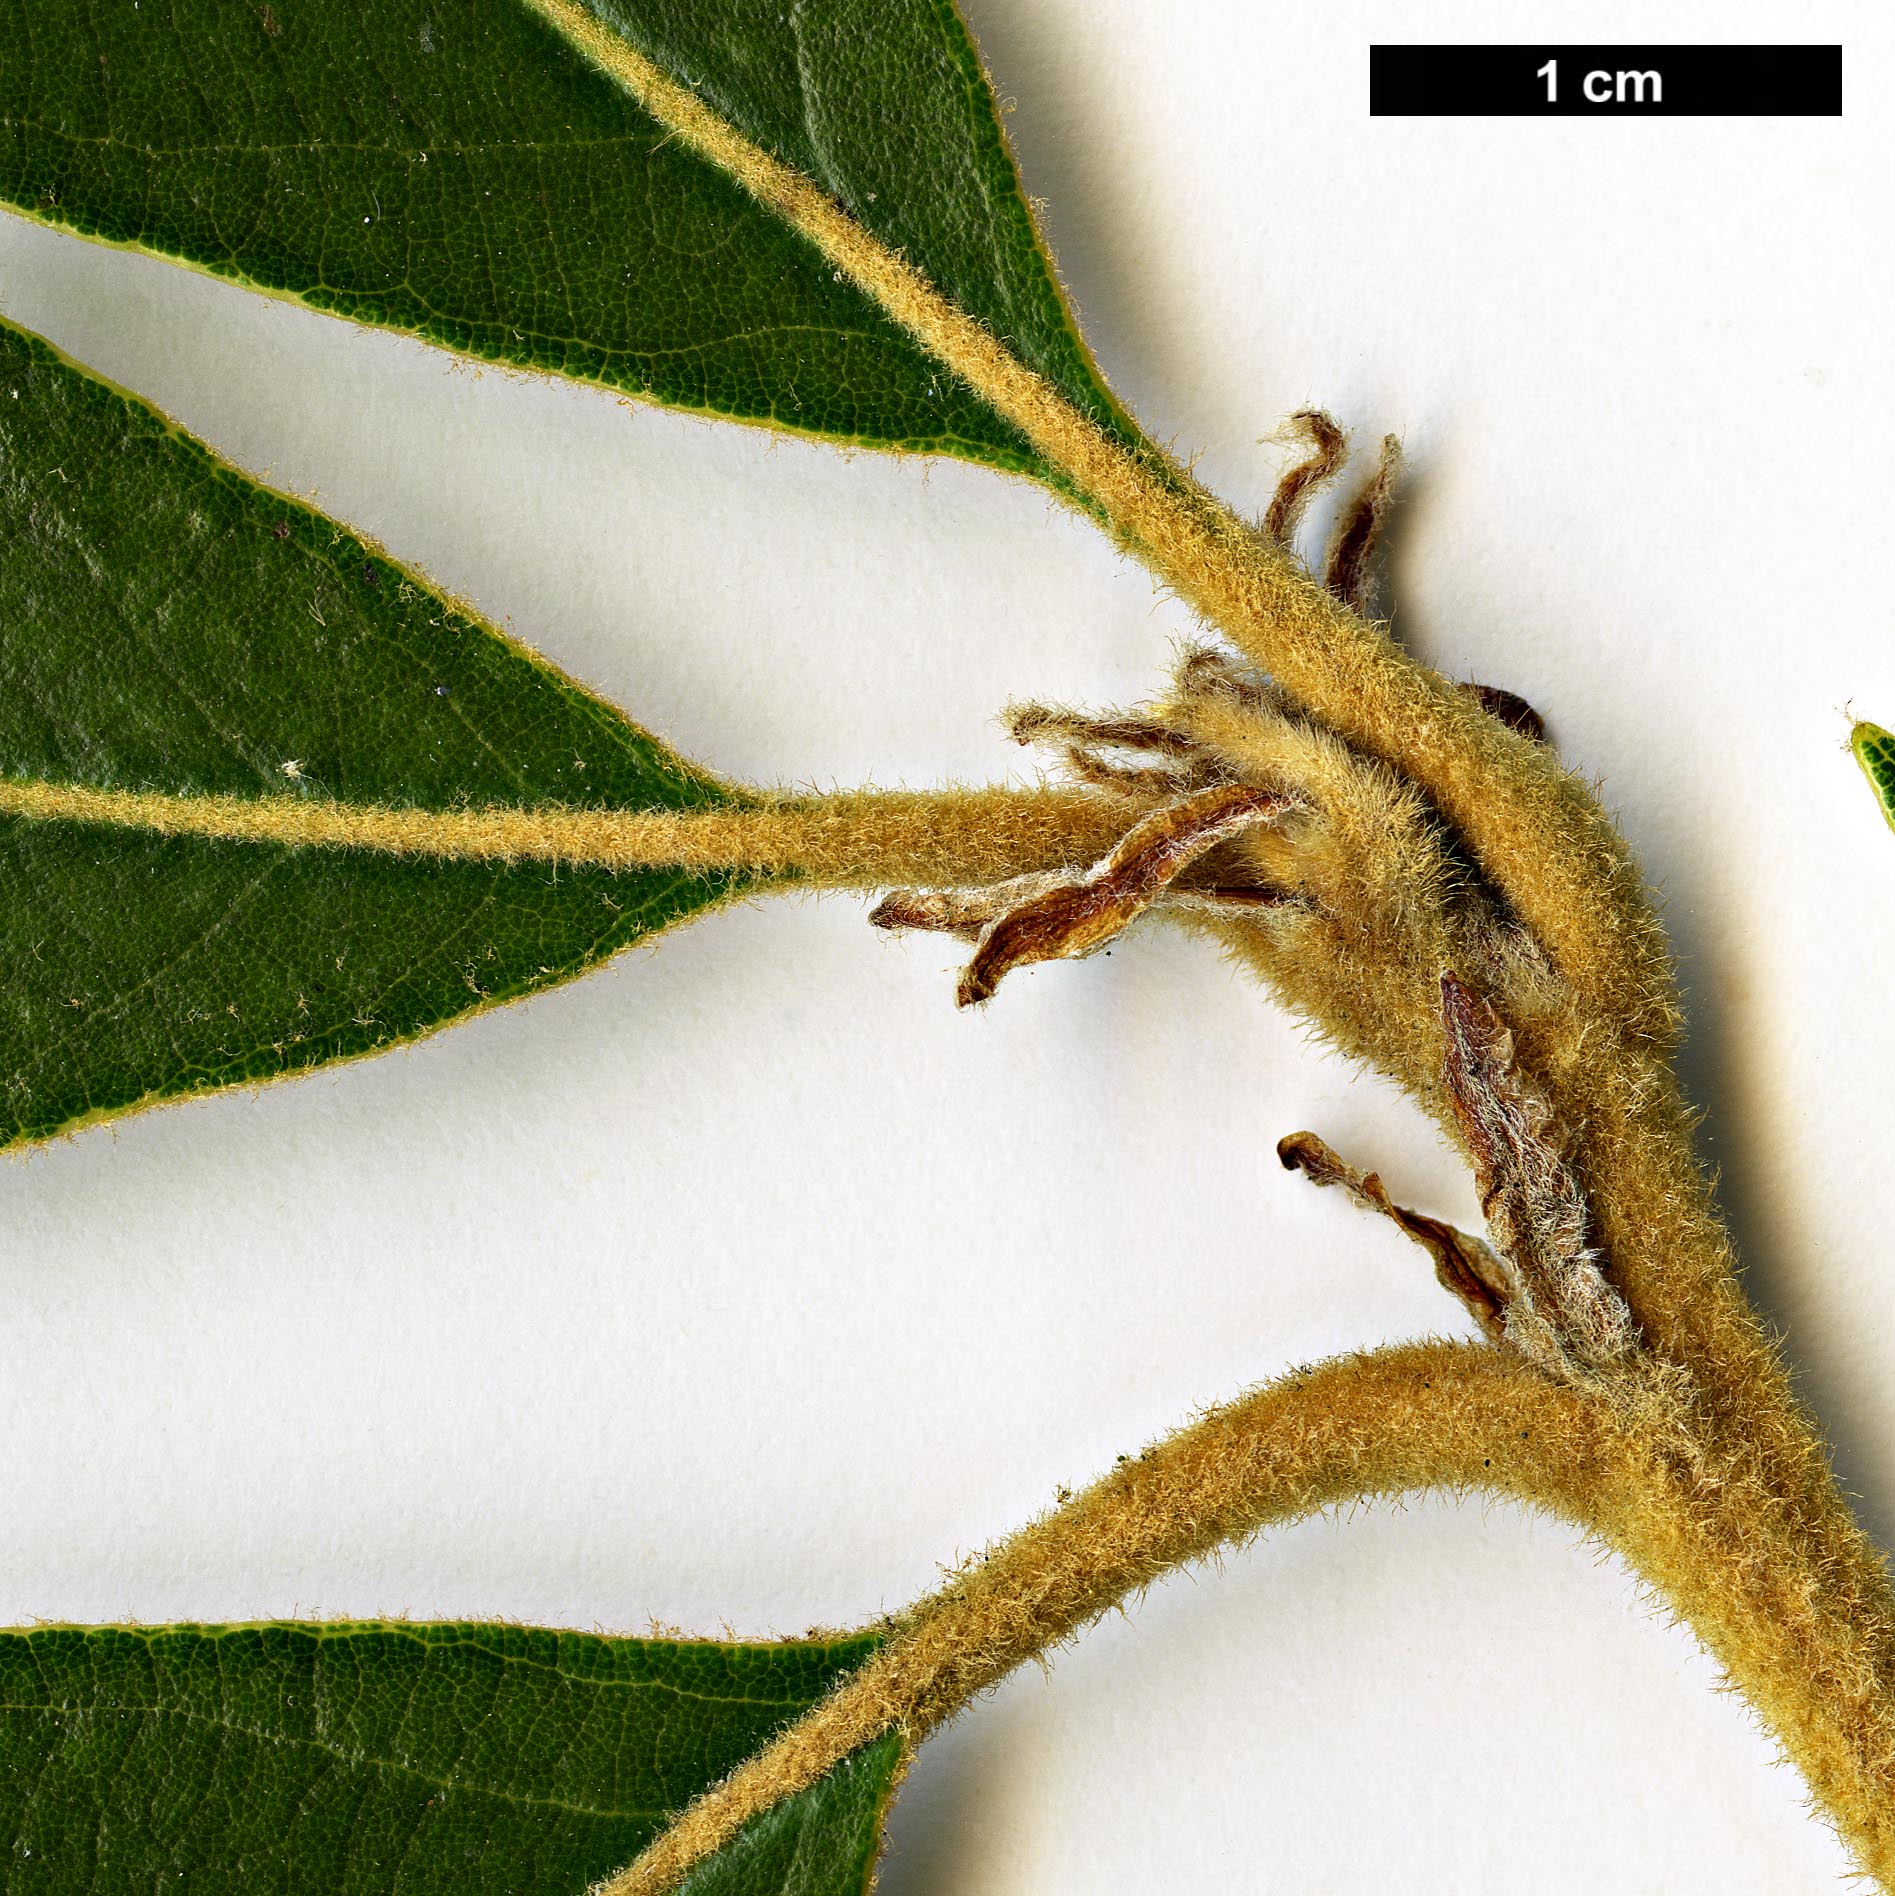 High resolution image: Family: Fagaceae - Genus: Quercus - Taxon: lanata